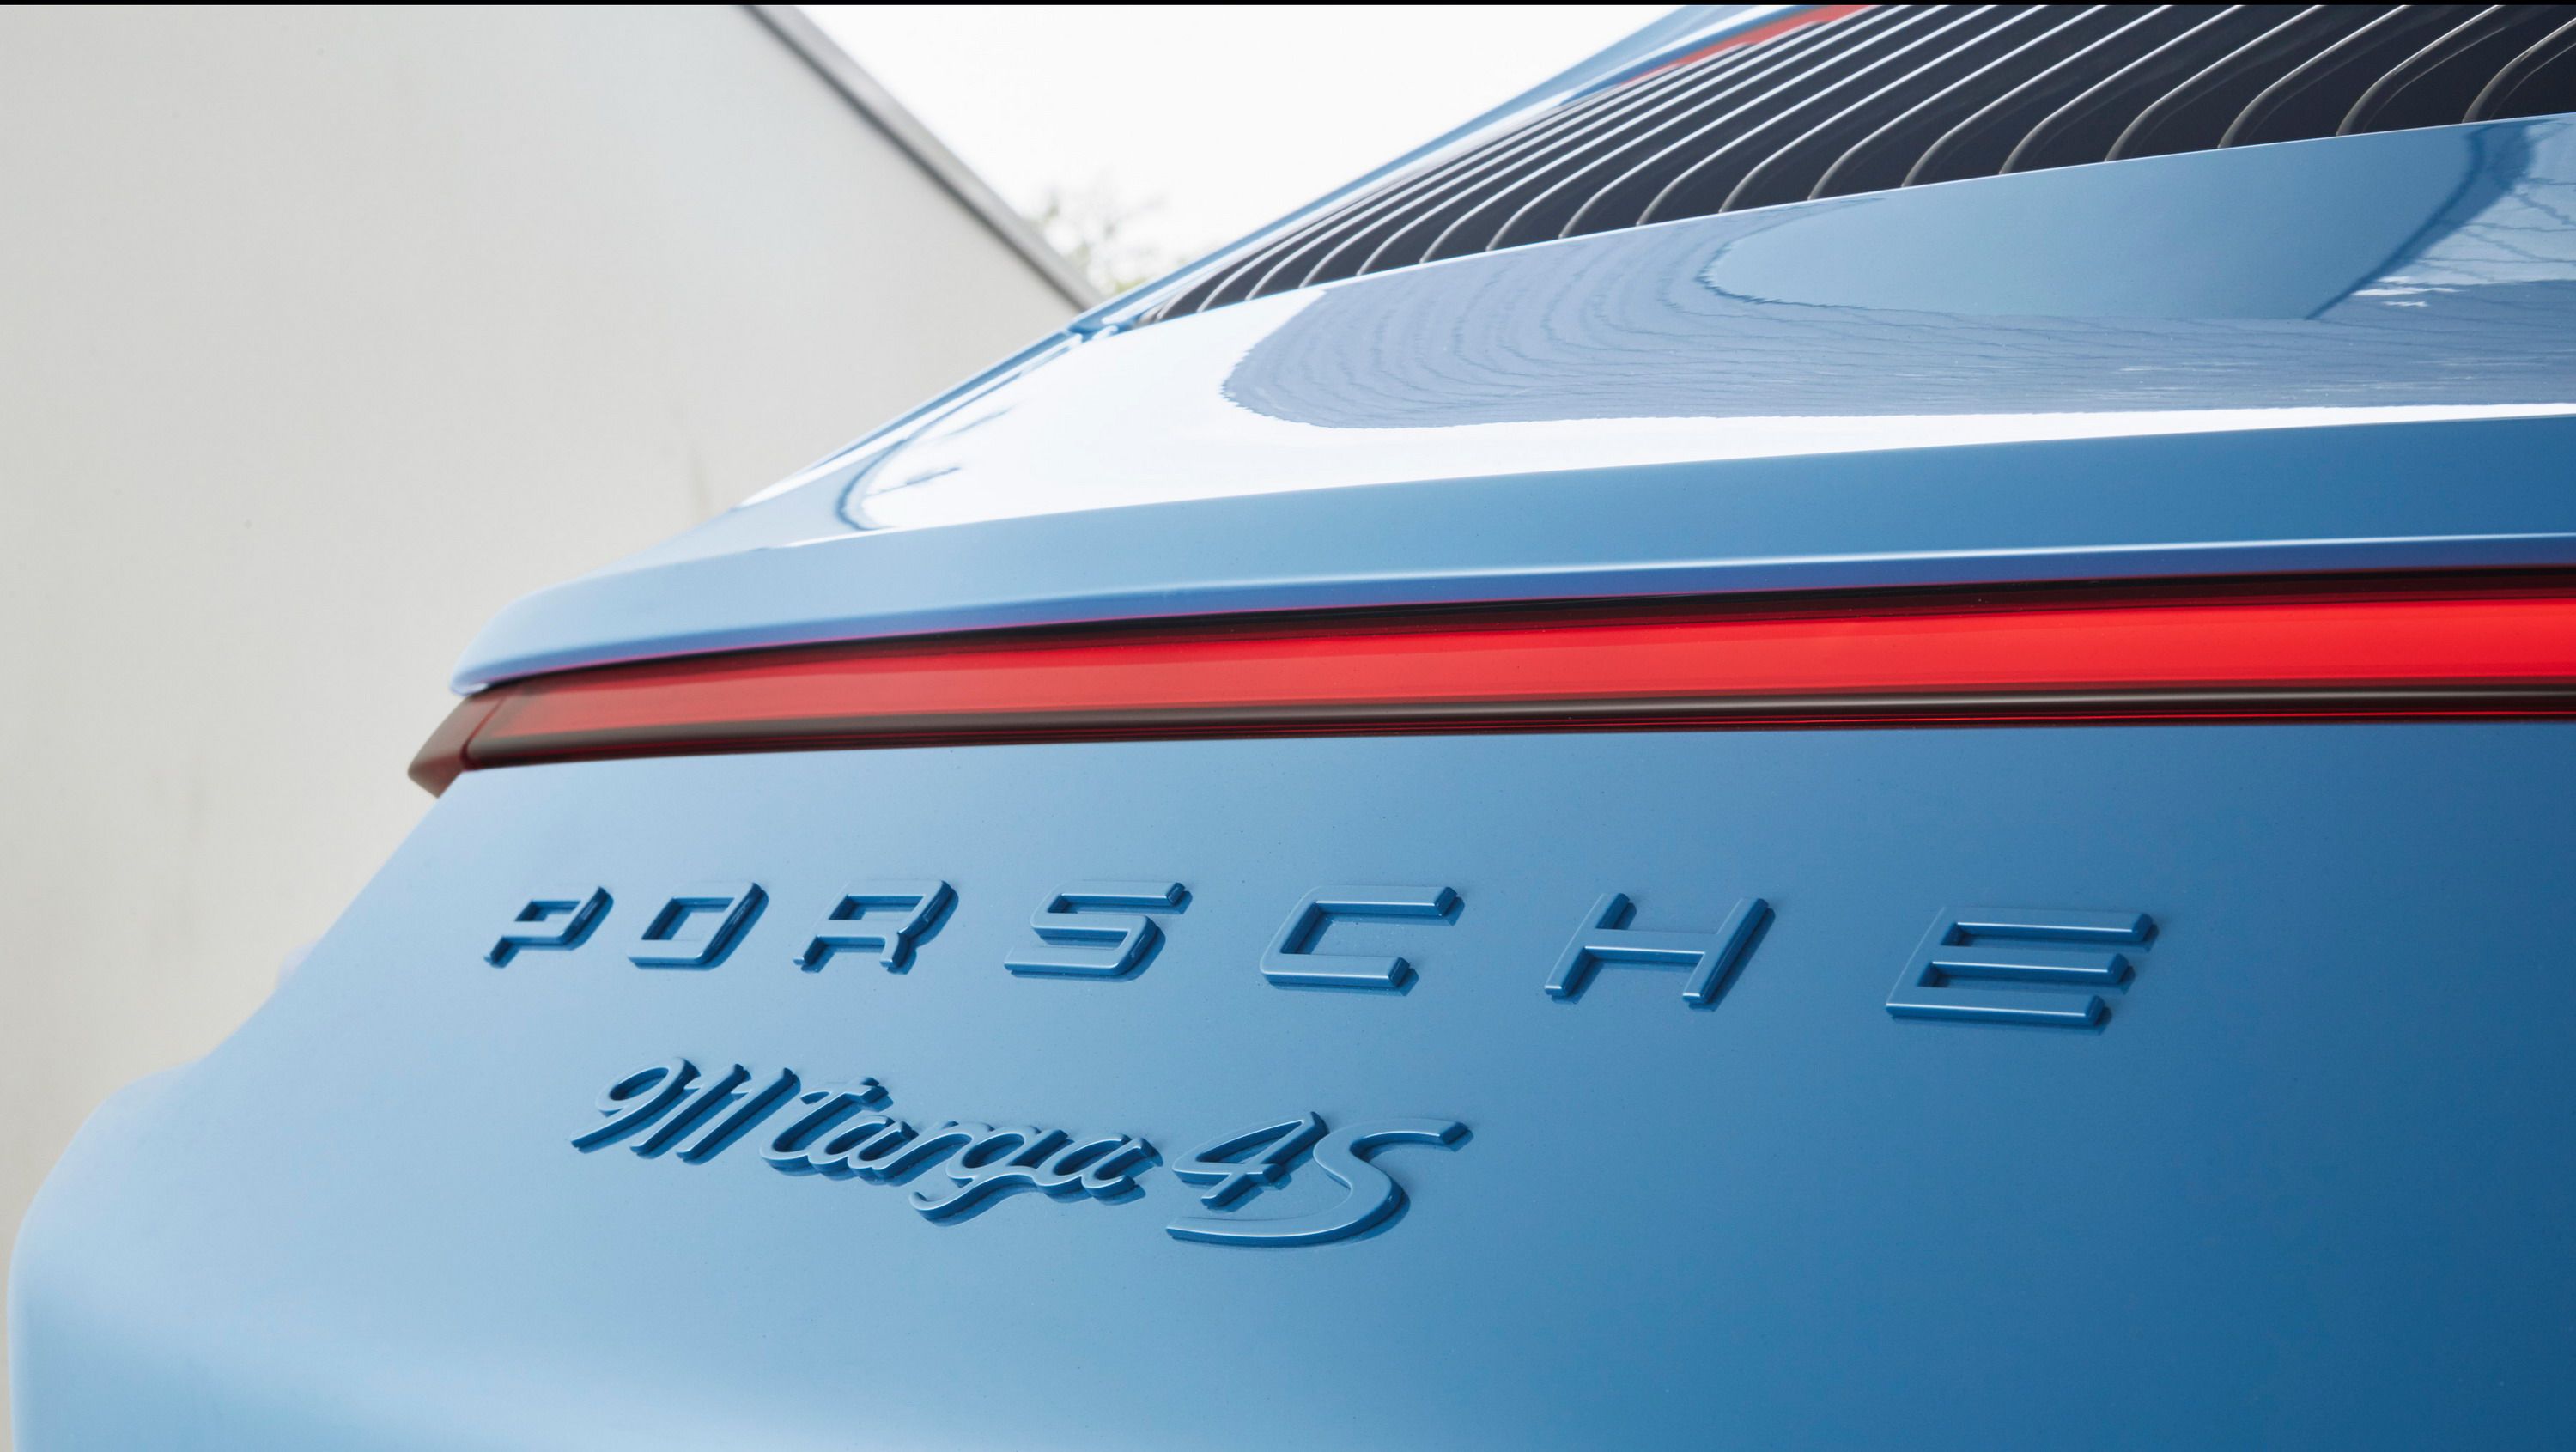 2017 Porsche 911 Targa 4S Exclusive Design Edition